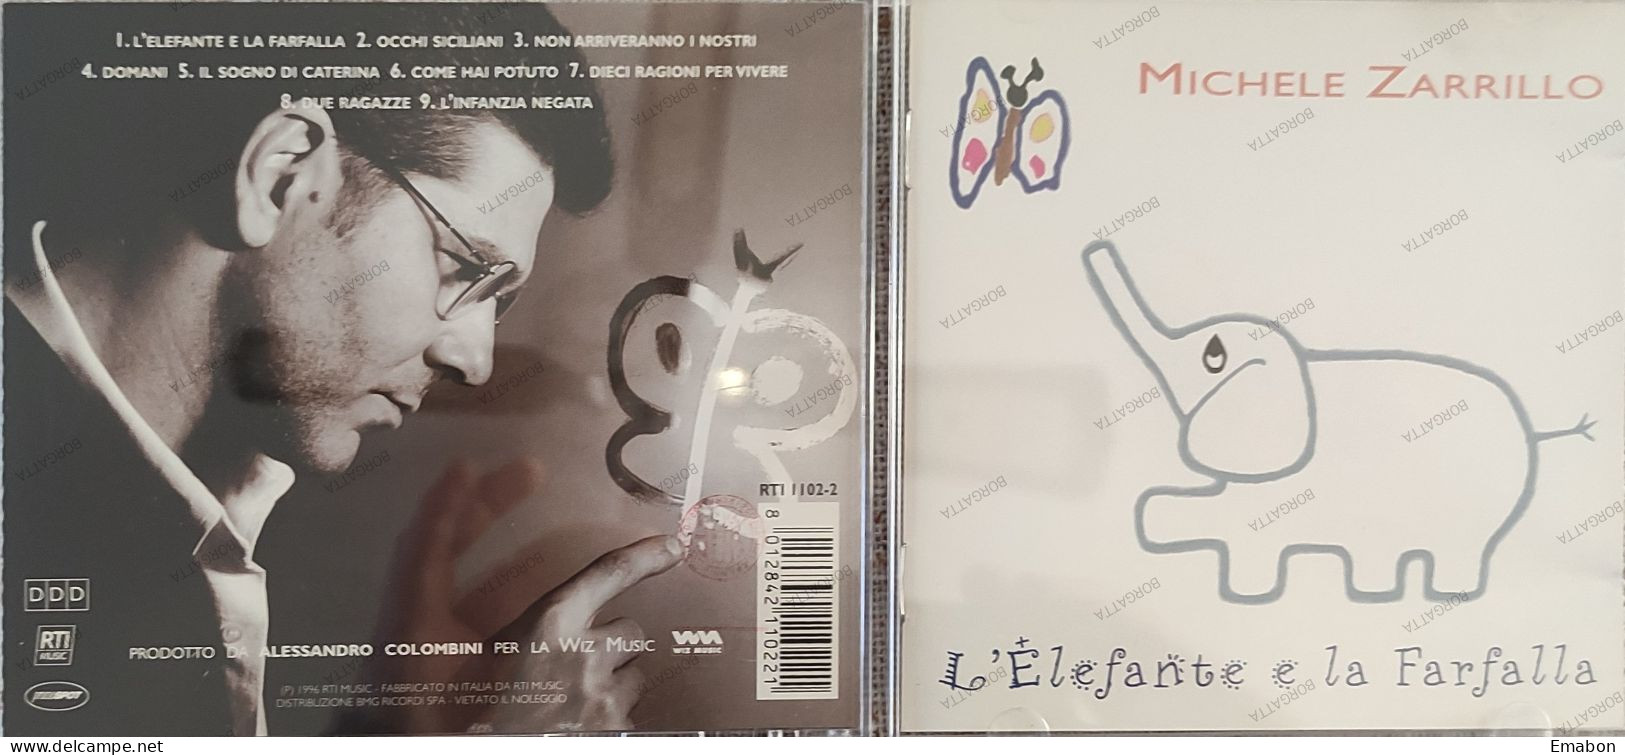 BORGATTA - ITALIANA  - Cd  MICHELE ZARILLO - L' ELEFANTE E LA FARFALLA - RTI MUSIC 1996 - USATO In Buono Stato - Altri - Musica Italiana